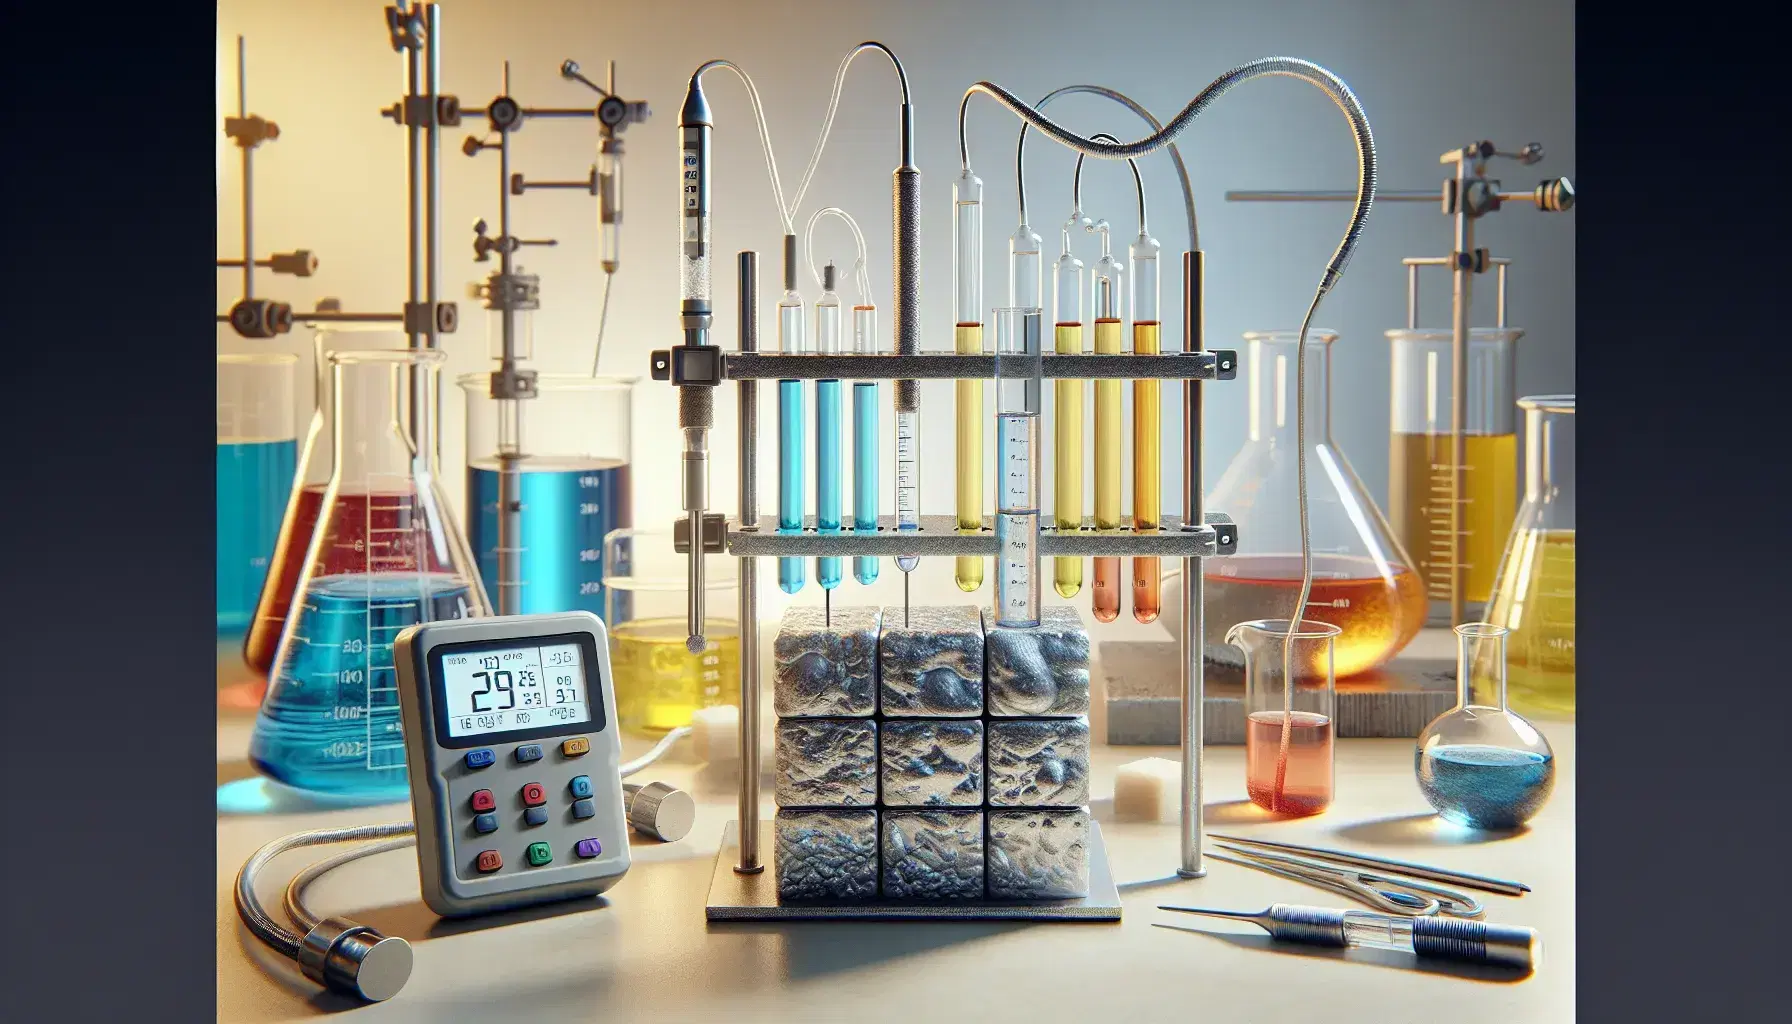 Laboratorio de investigación con termómetro digital, tubos de ensayo con líquidos de colores, matraz de Erlenmeyer y metal corroído.